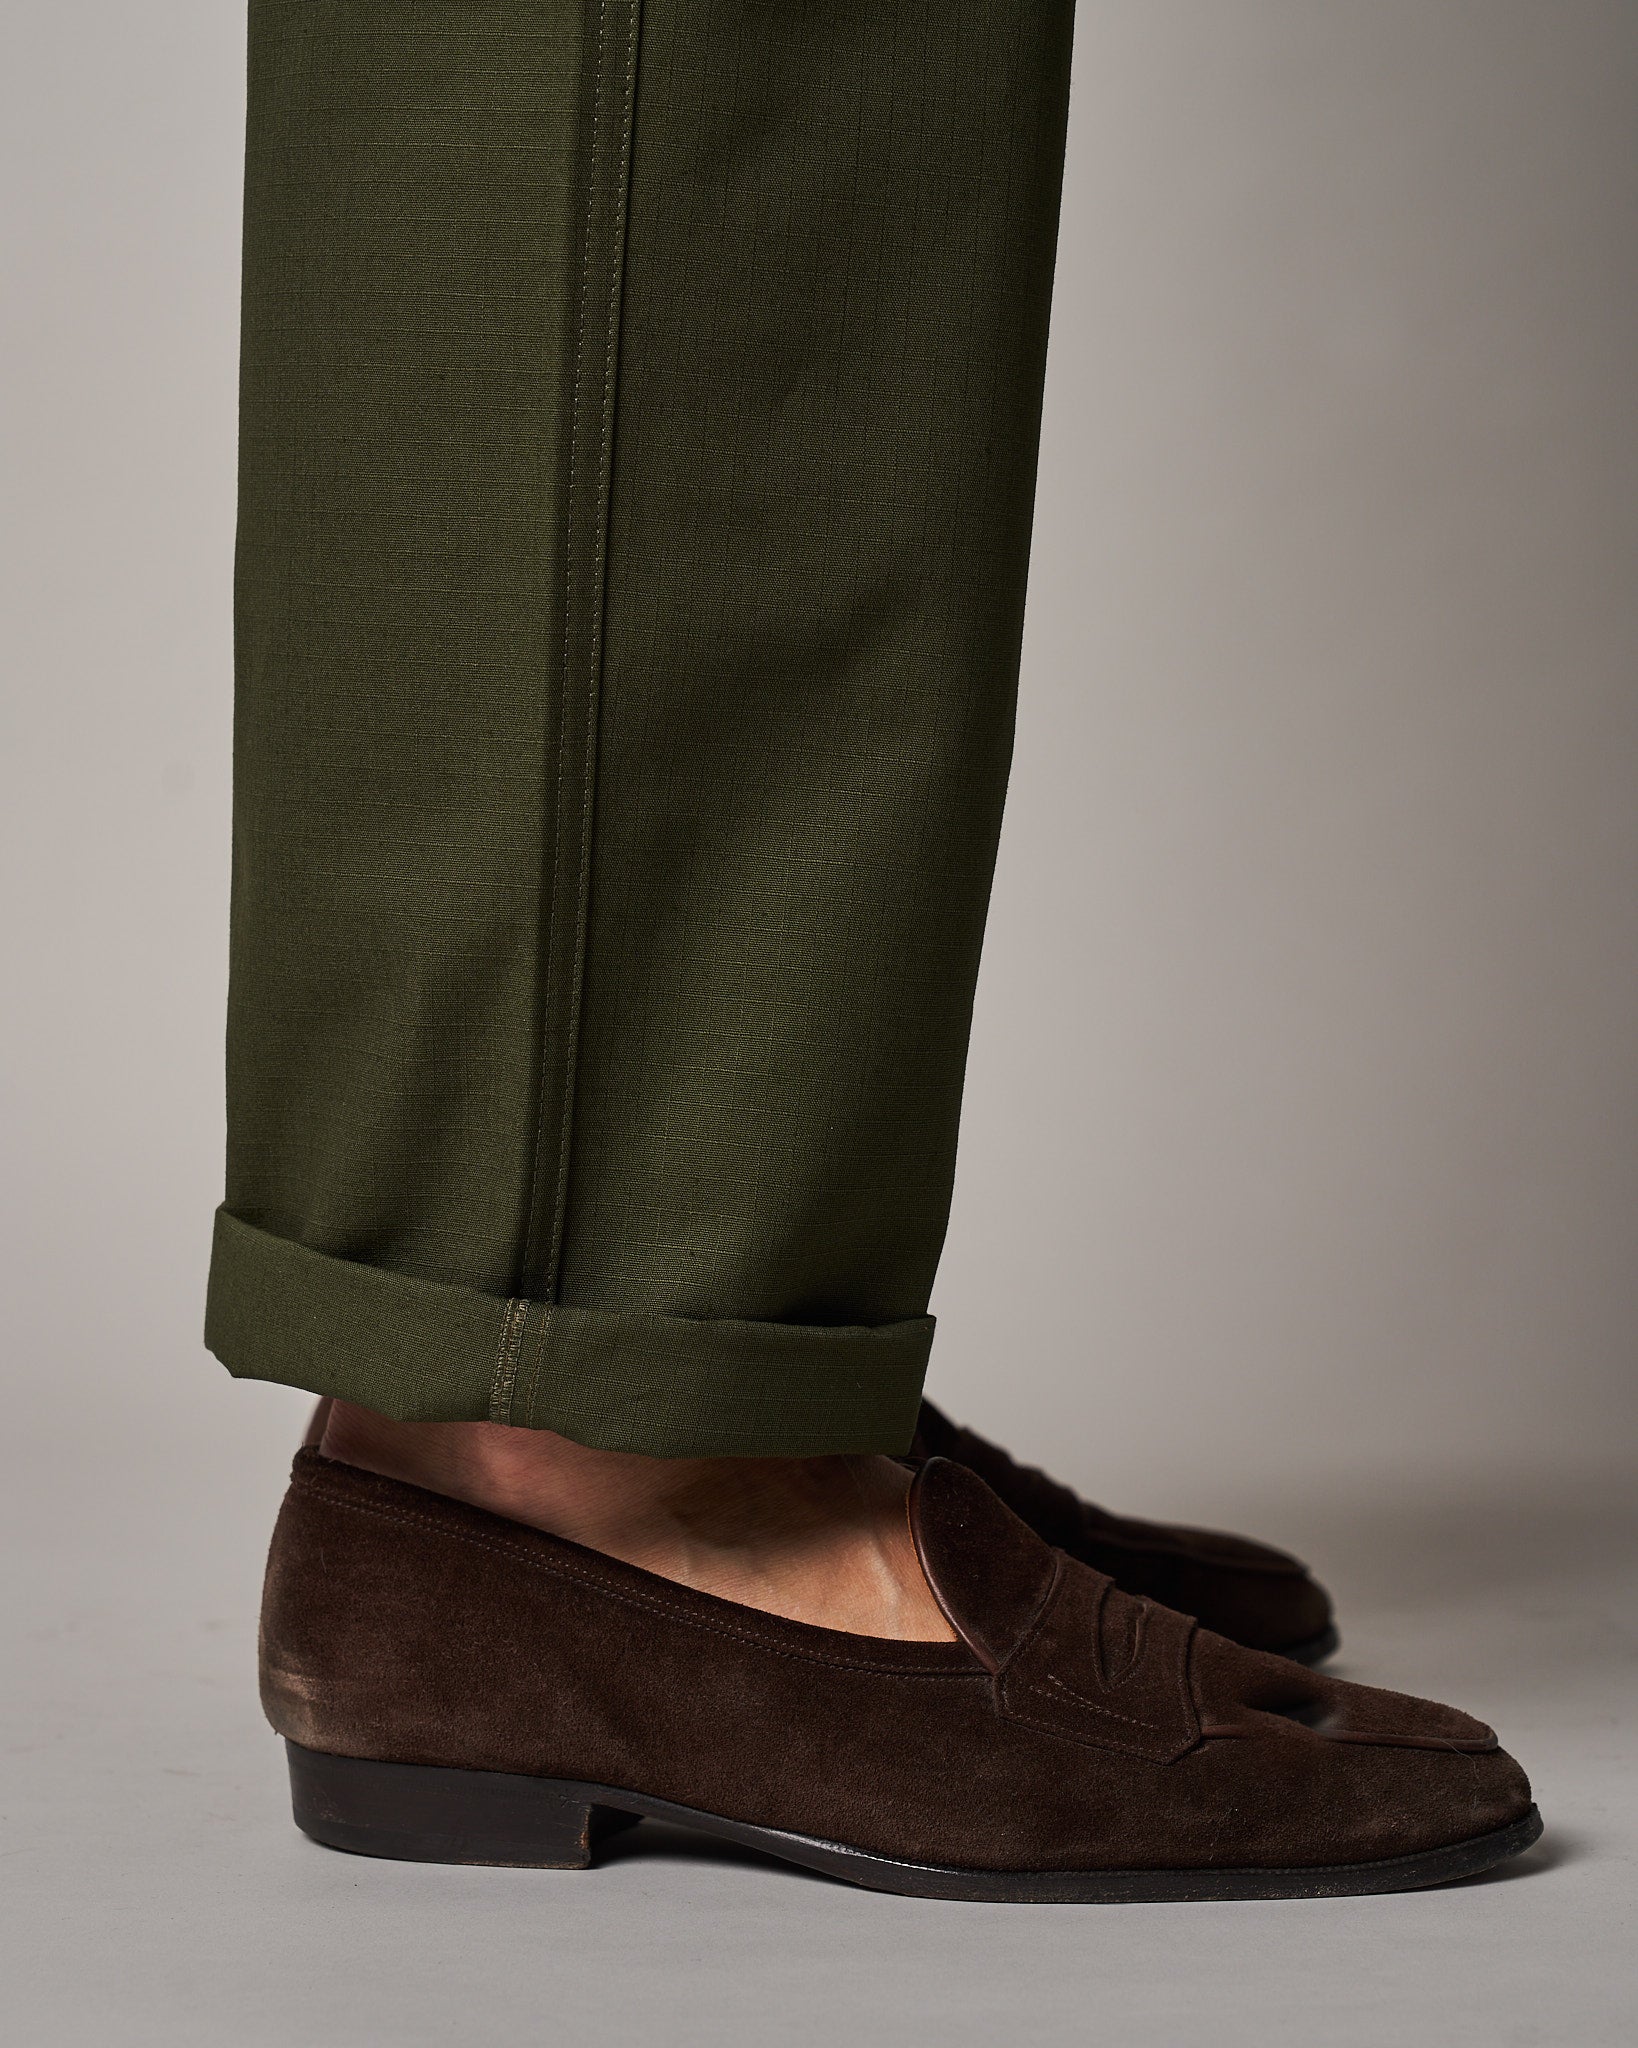 T107 Fatigue Pants - Green (Pre-Order)